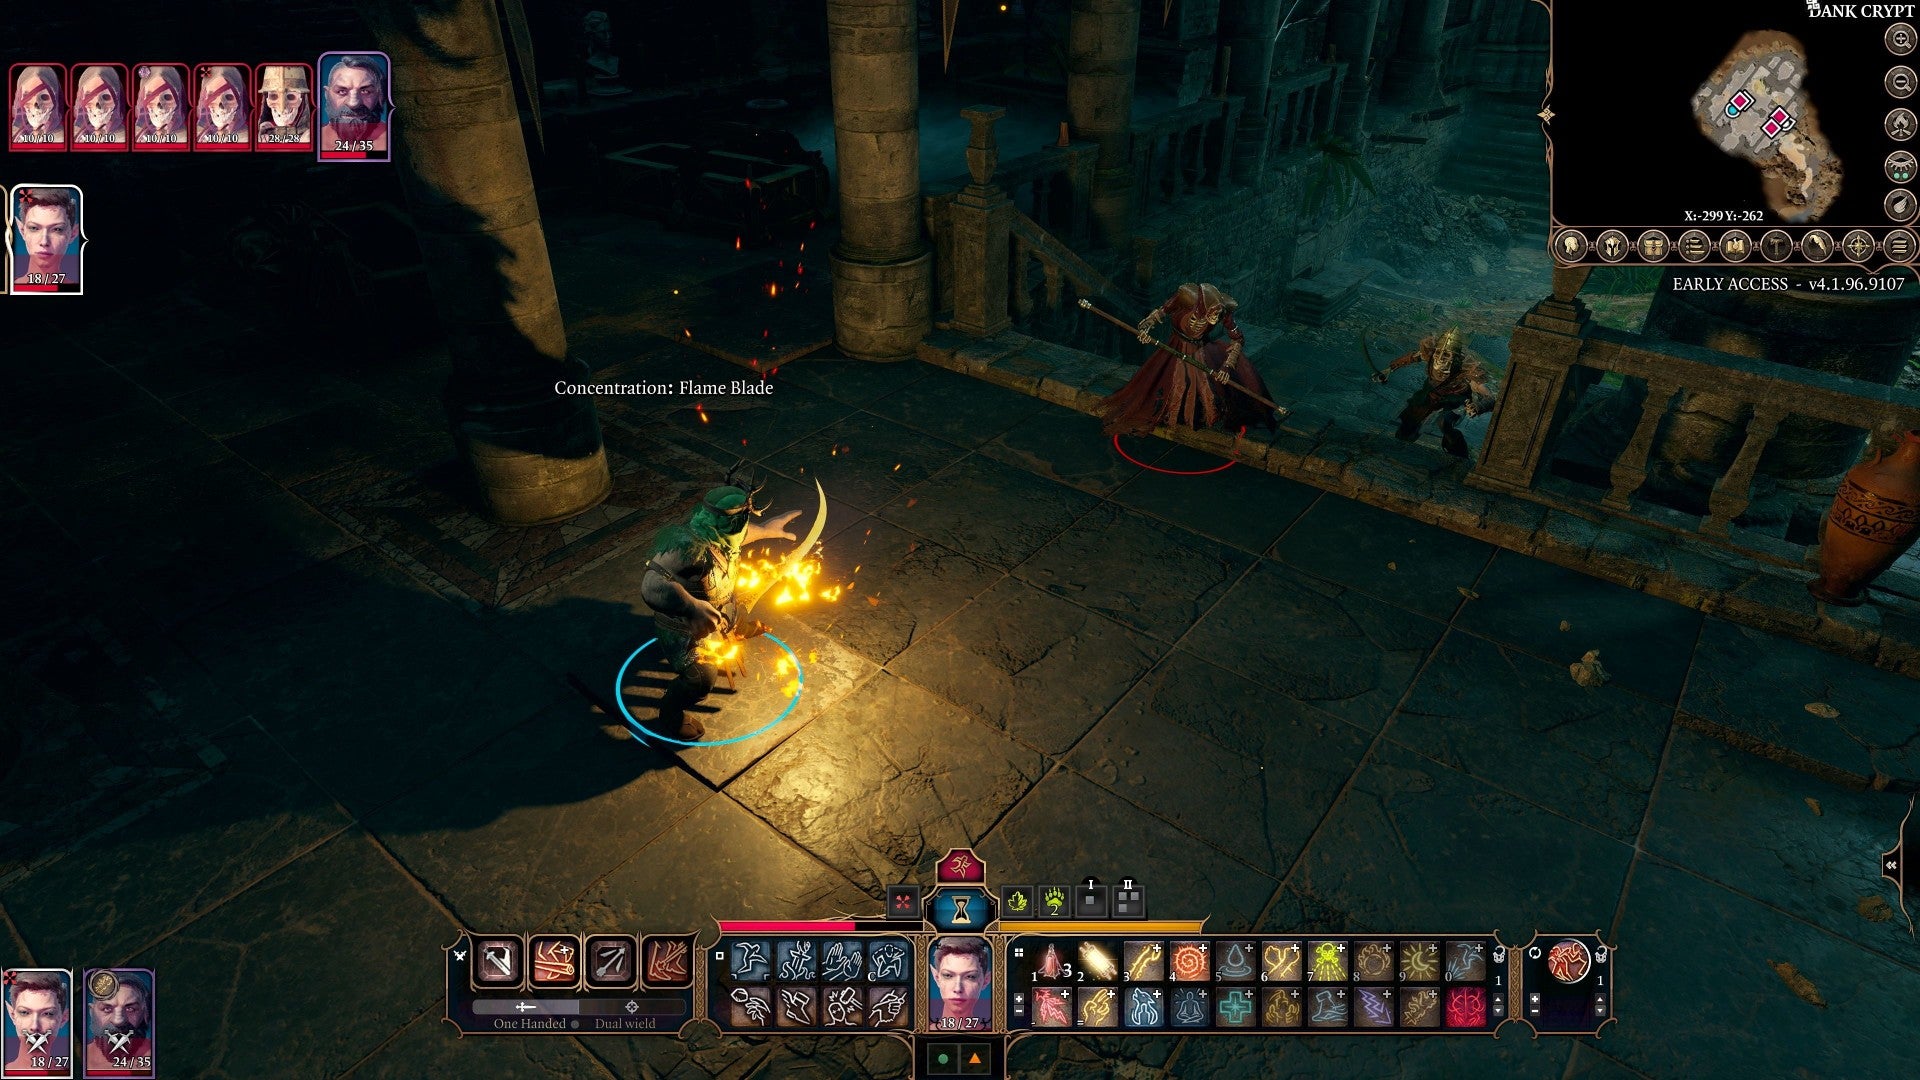 Скриншот Baldur'S Gate 3, Показывающий, Как Персонаж Концентрируется На Заклинании Огненного Клинка, Пока Скелеты Спотыкаются По Лестнице.